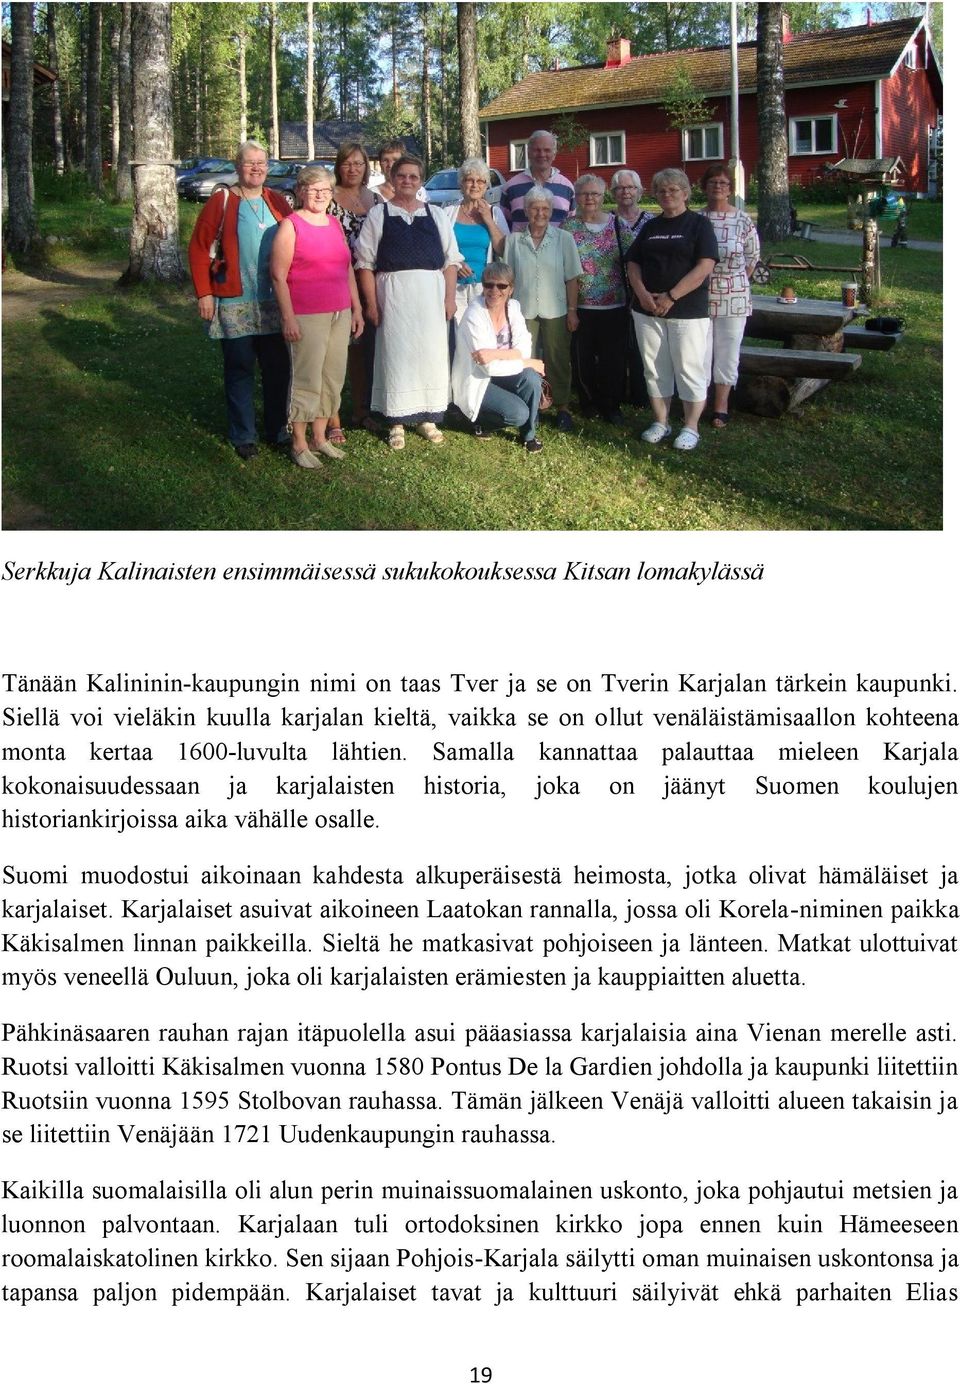 Samalla kannattaa palauttaa mieleen Karjala kokonaisuudessaan ja karjalaisten historia, joka on jäänyt Suomen koulujen historiankirjoissa aika vähälle osalle.